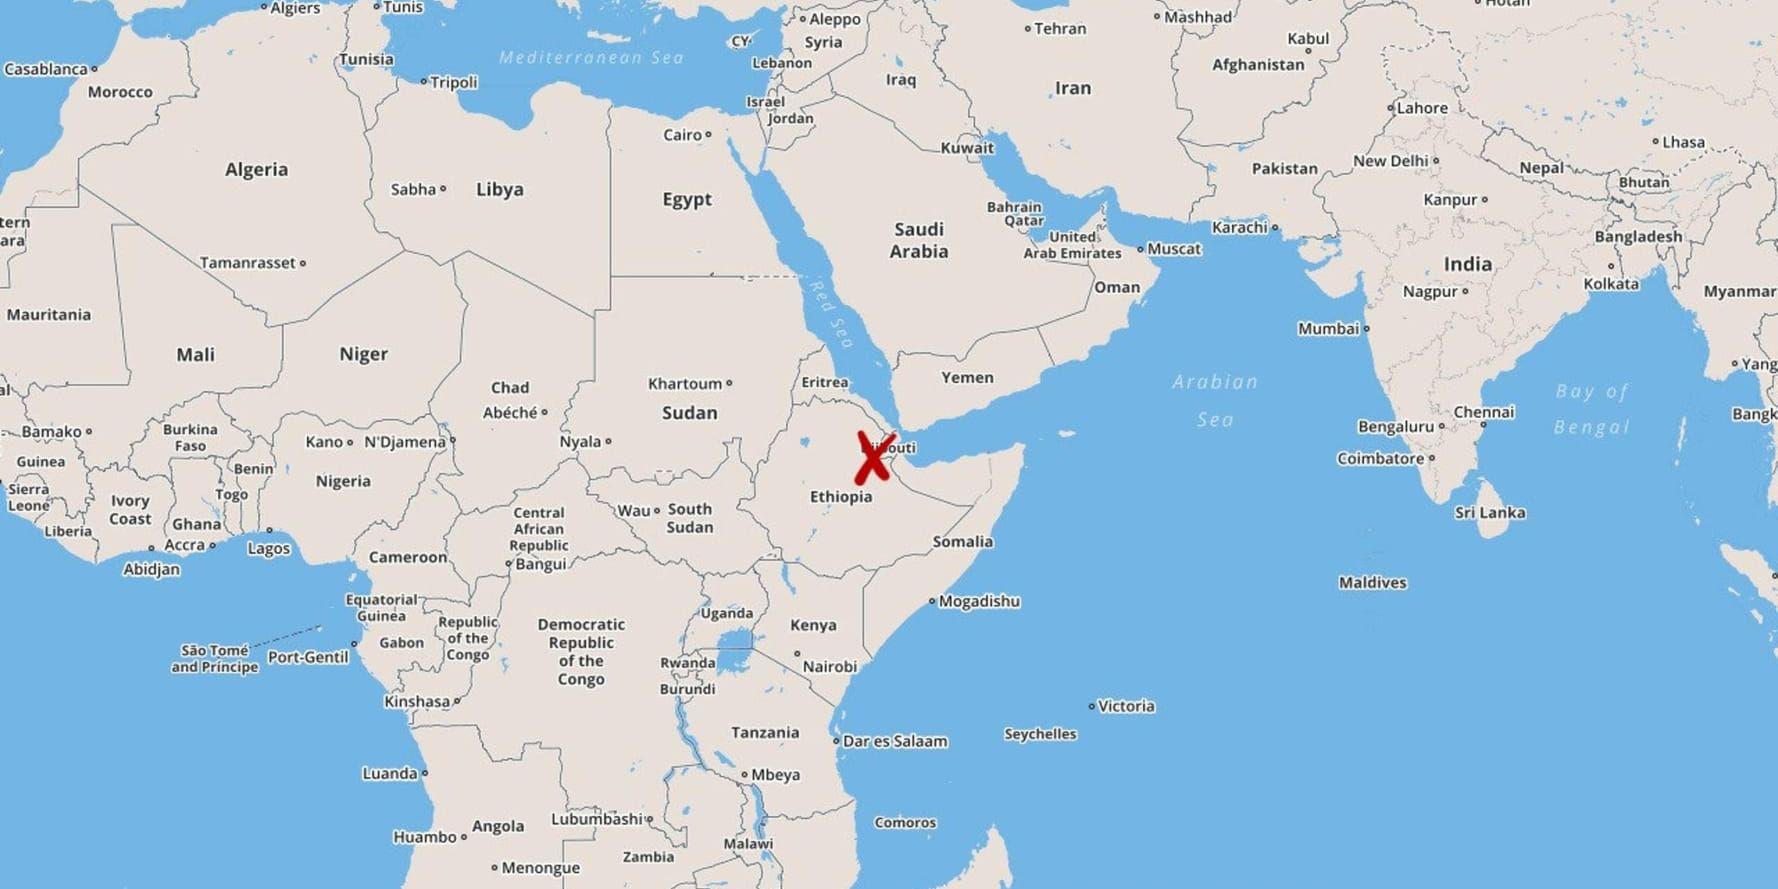 Minst fem personer har bekräftats omkomna och ytterligare 130 saknas sedan två båtar lastade med migranter har sjunkit utanför Djiboutis kust, enligt den Internationella migrationsorganisationen IOM.